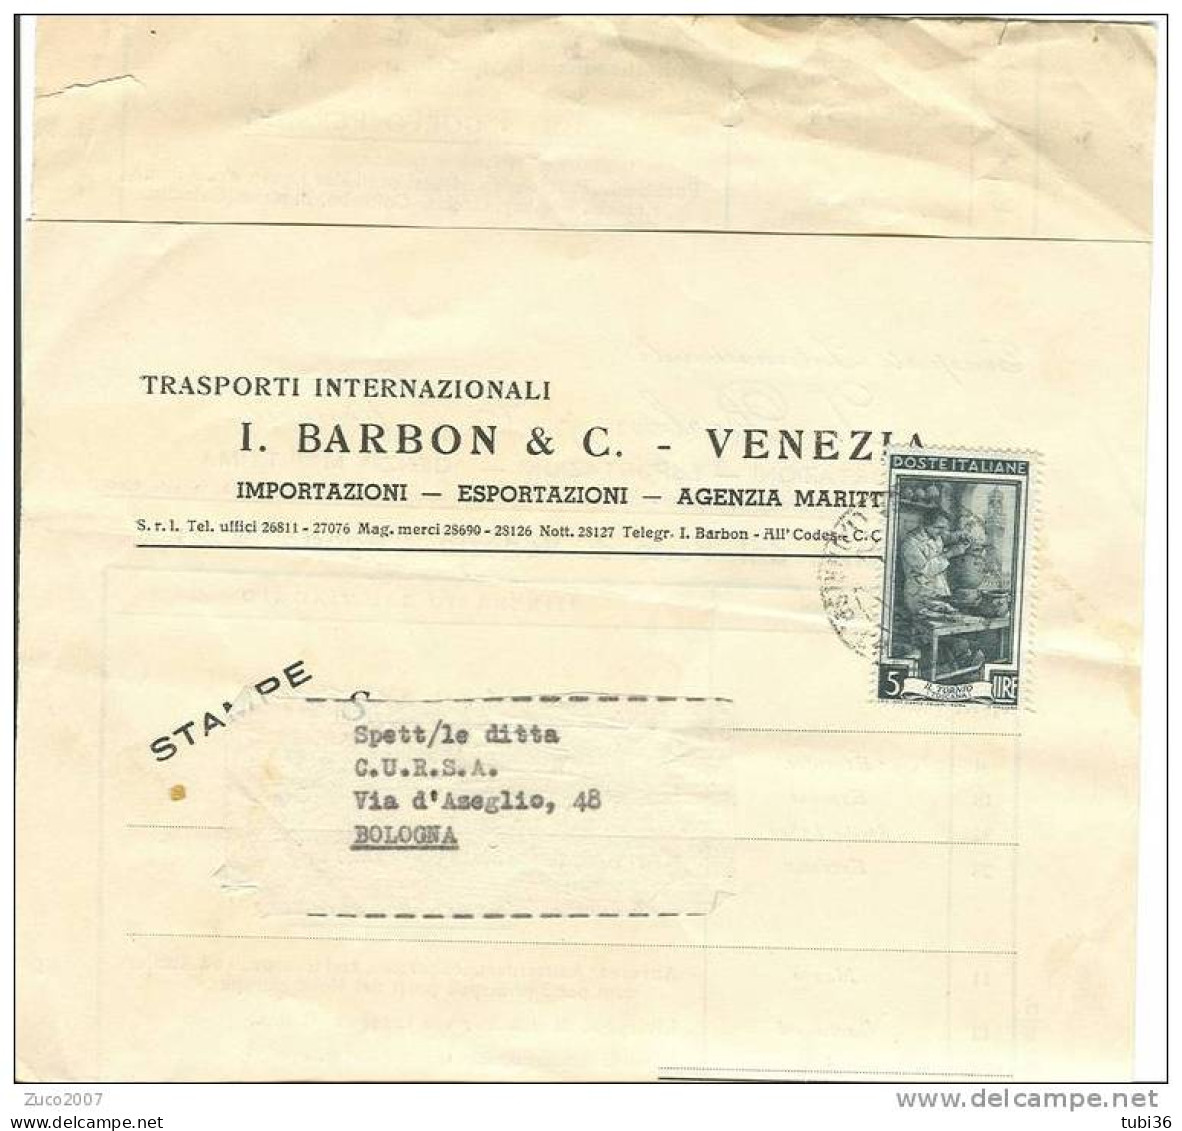 BARBON E C. - VENEZIA - TRASPORTI INTERNAZIONALI - CALENDARIO PARTENZE DAL PORTO DI VENEZIA  1952. - Monde